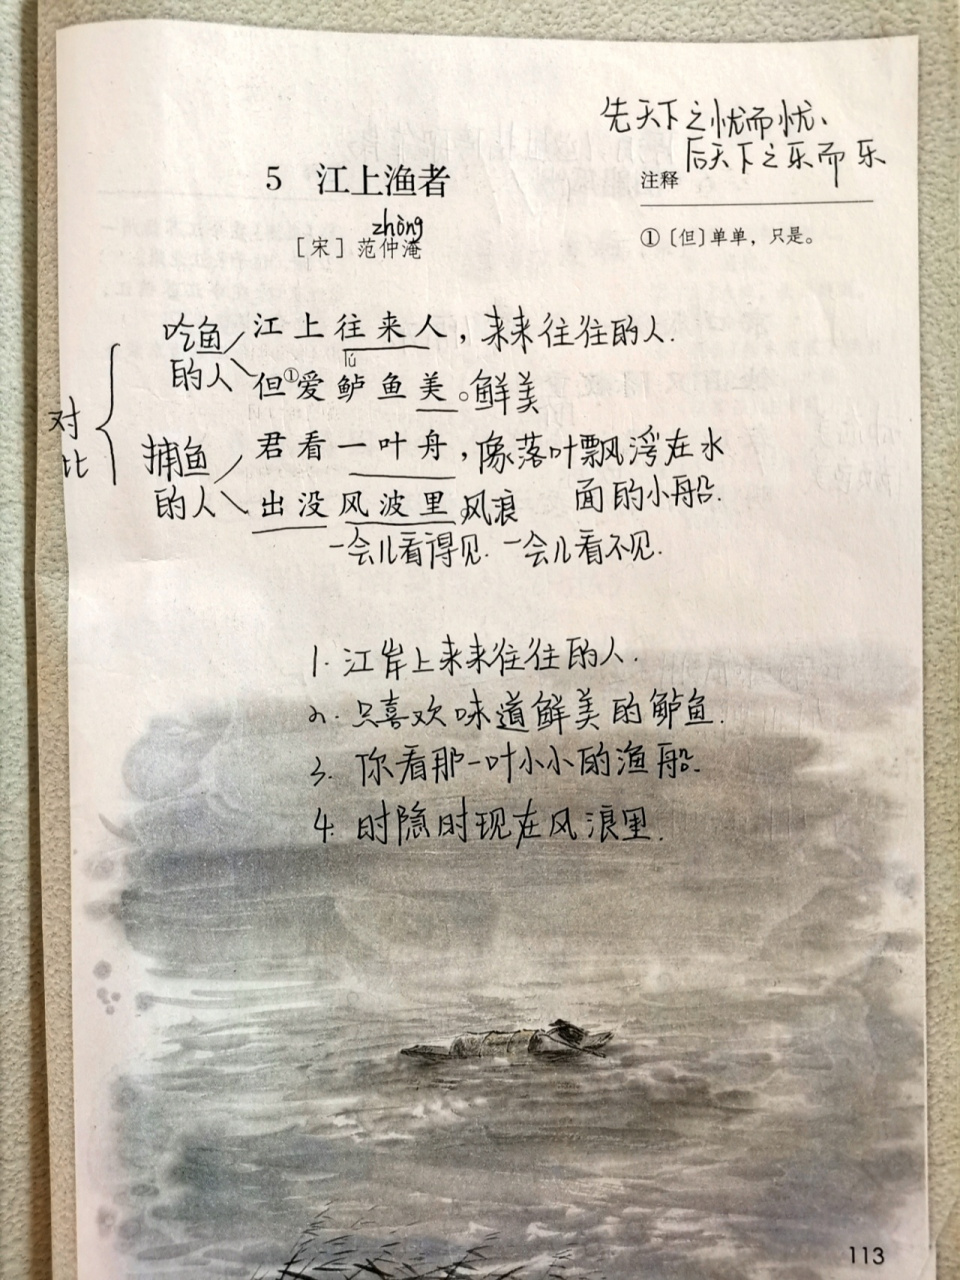 江上渔者古诗 全文图片